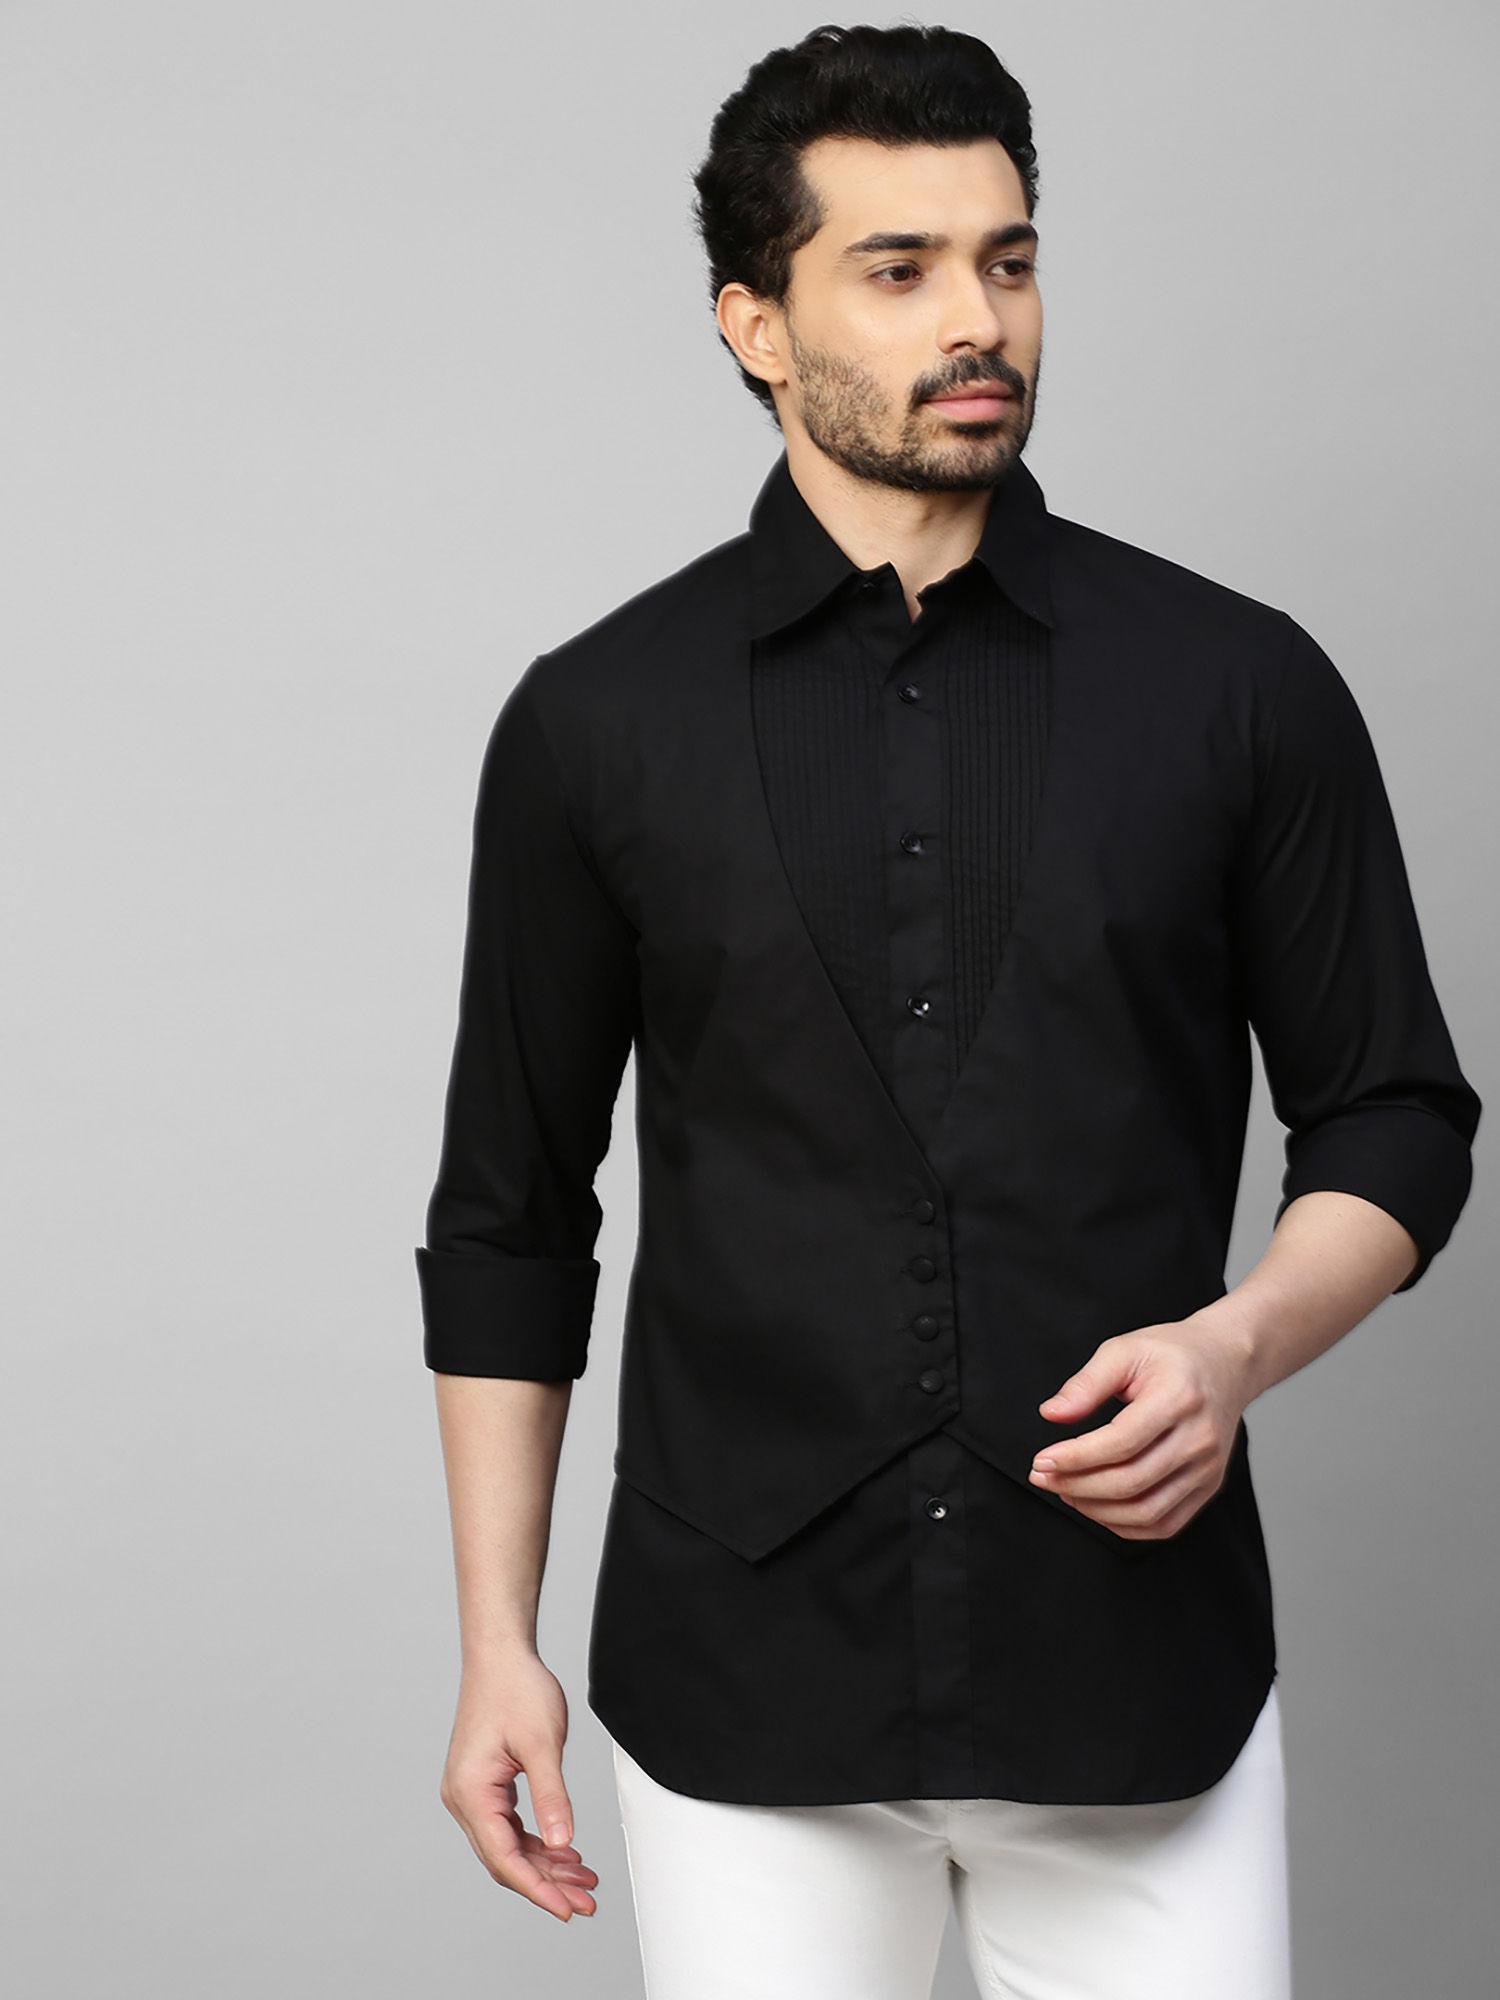 black waistcoat feature shirt pintucks and 4 self buttons